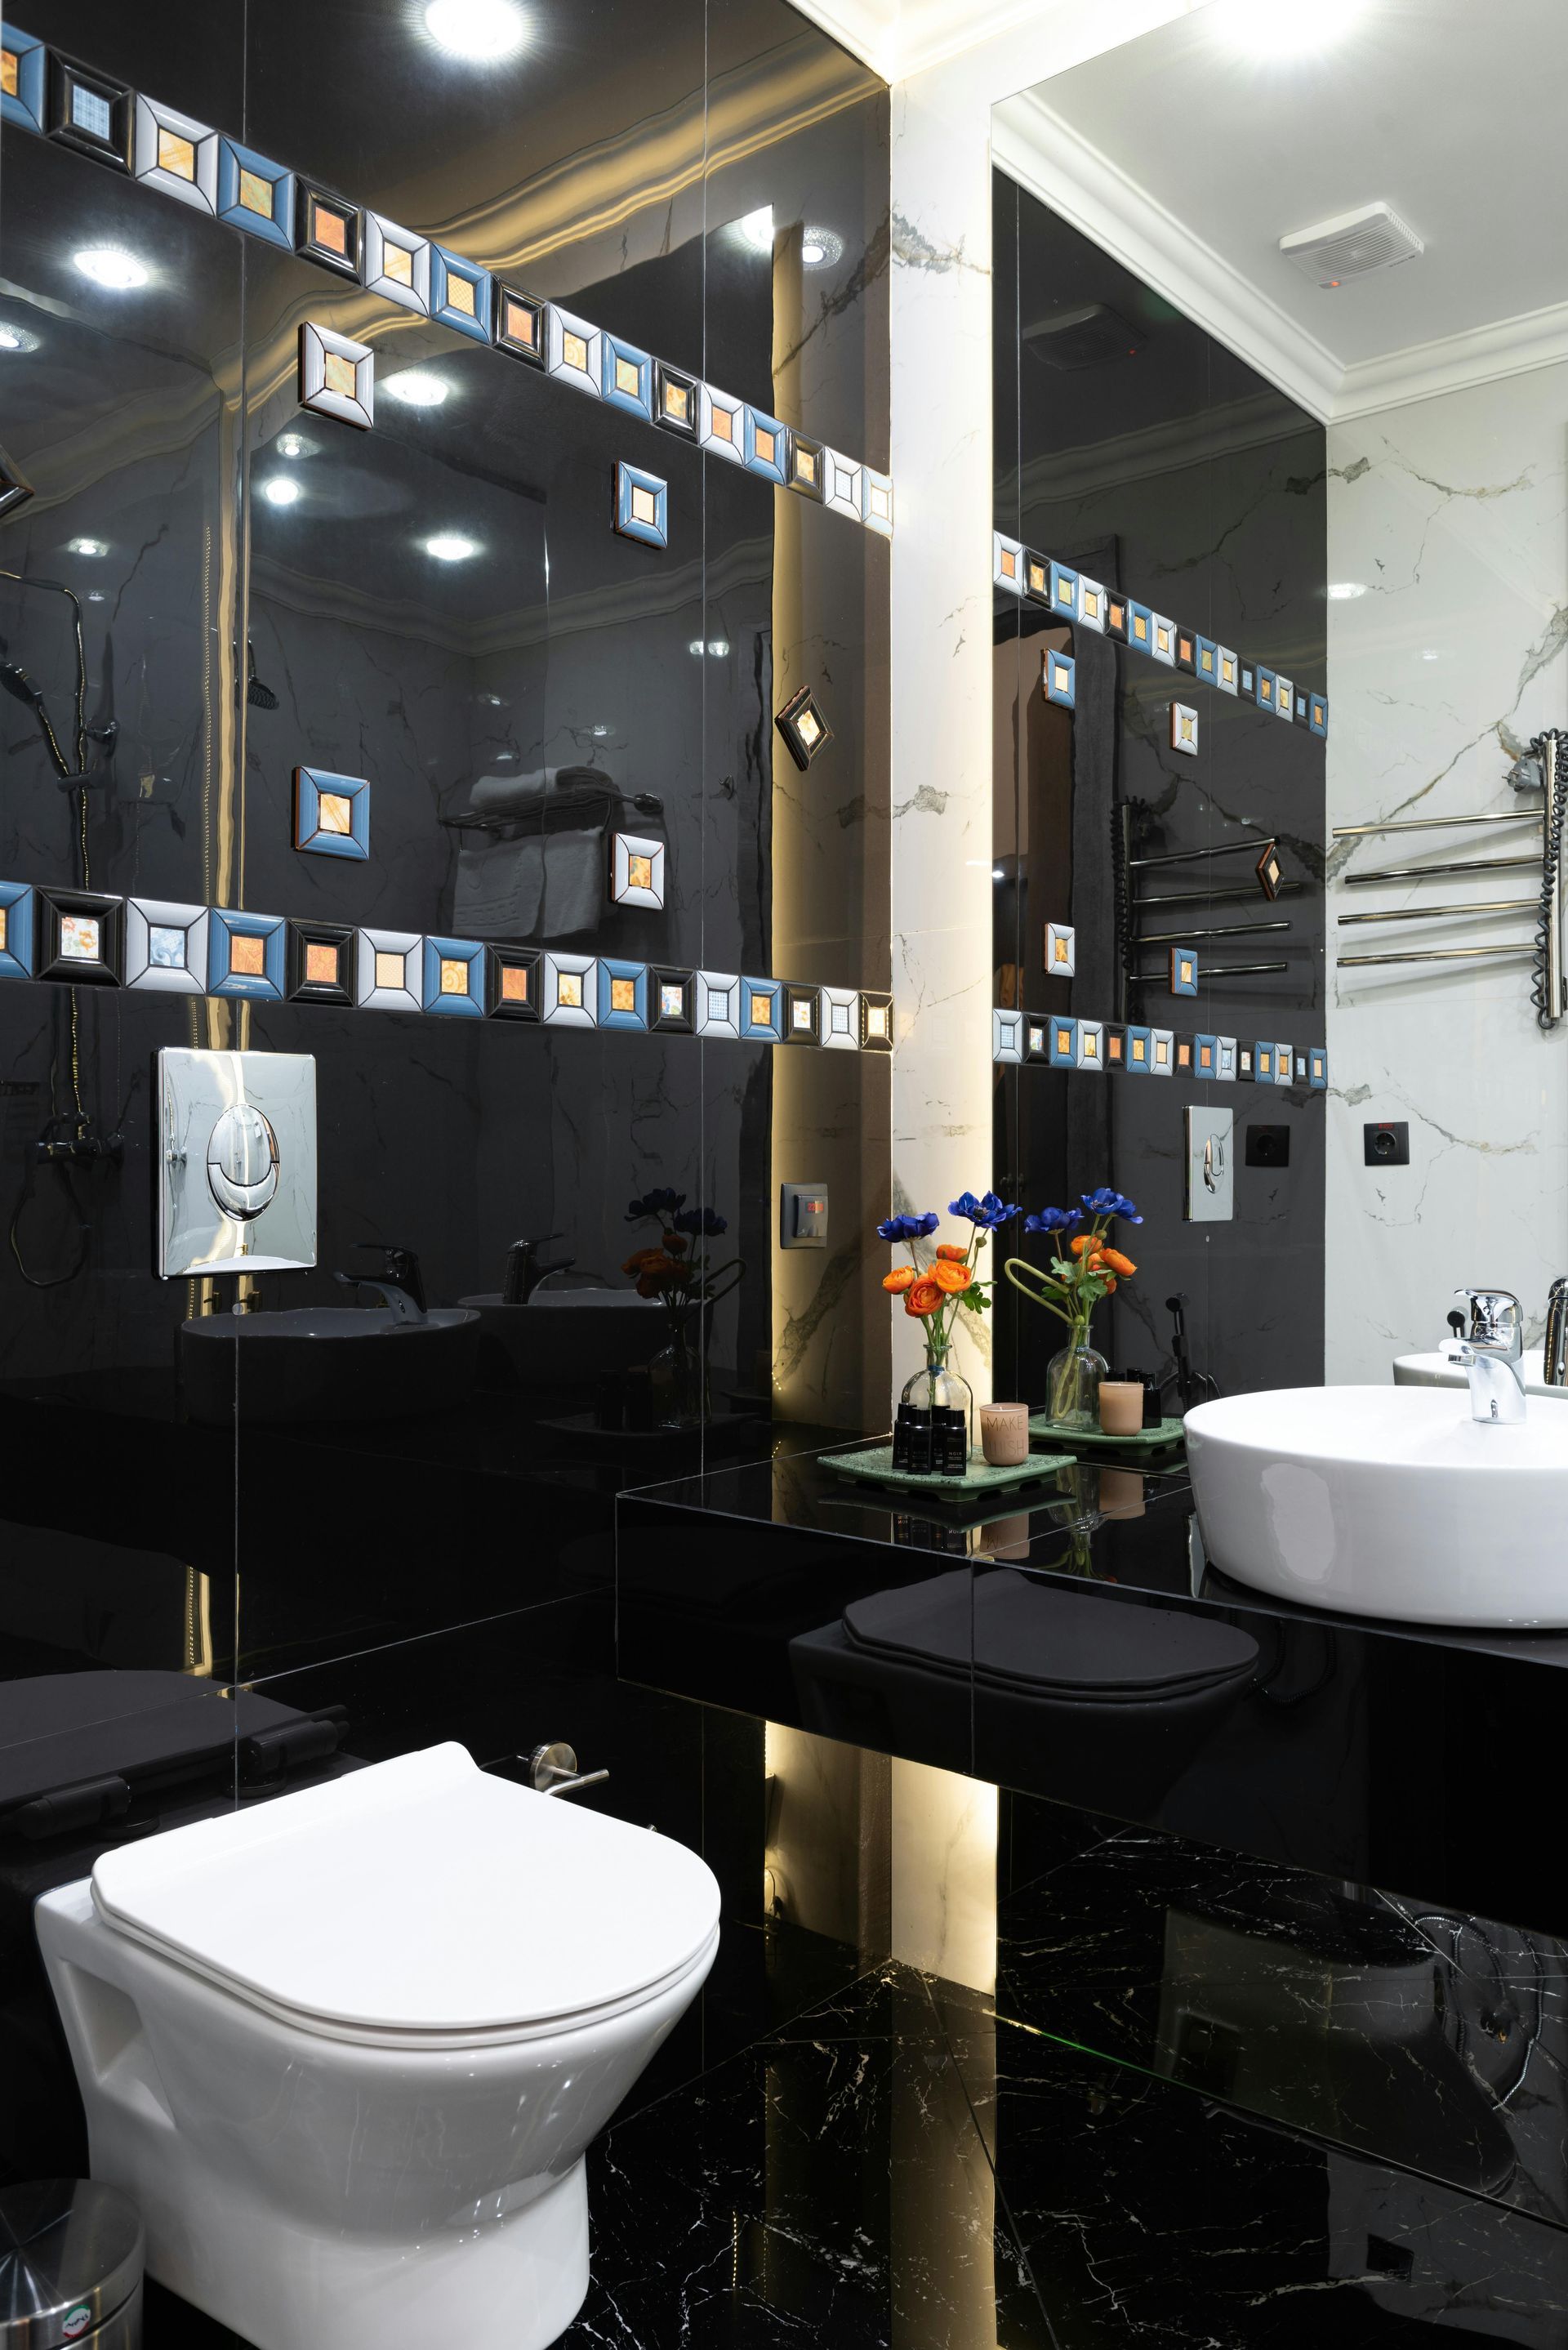 New modern bathroom in dark black by Daffodil tiling in Swansea